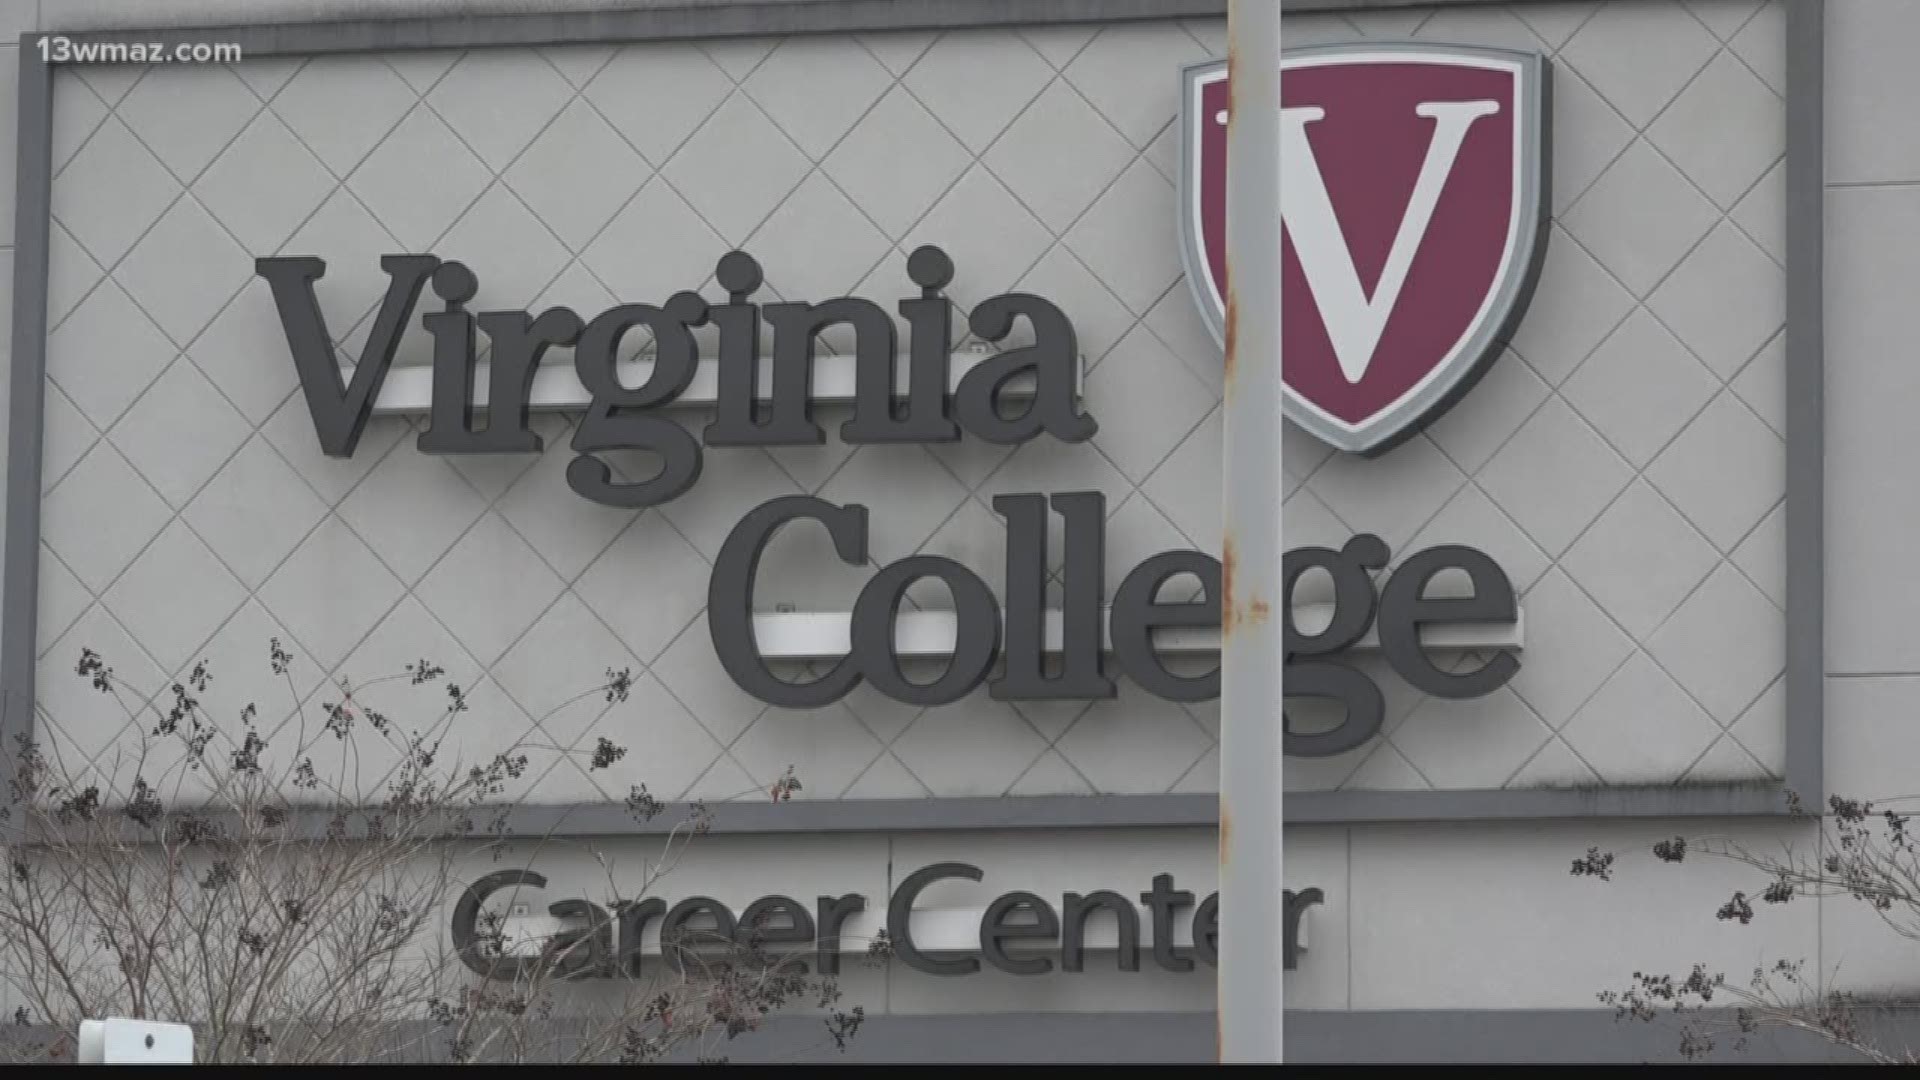 Virginia College Macon campus closes